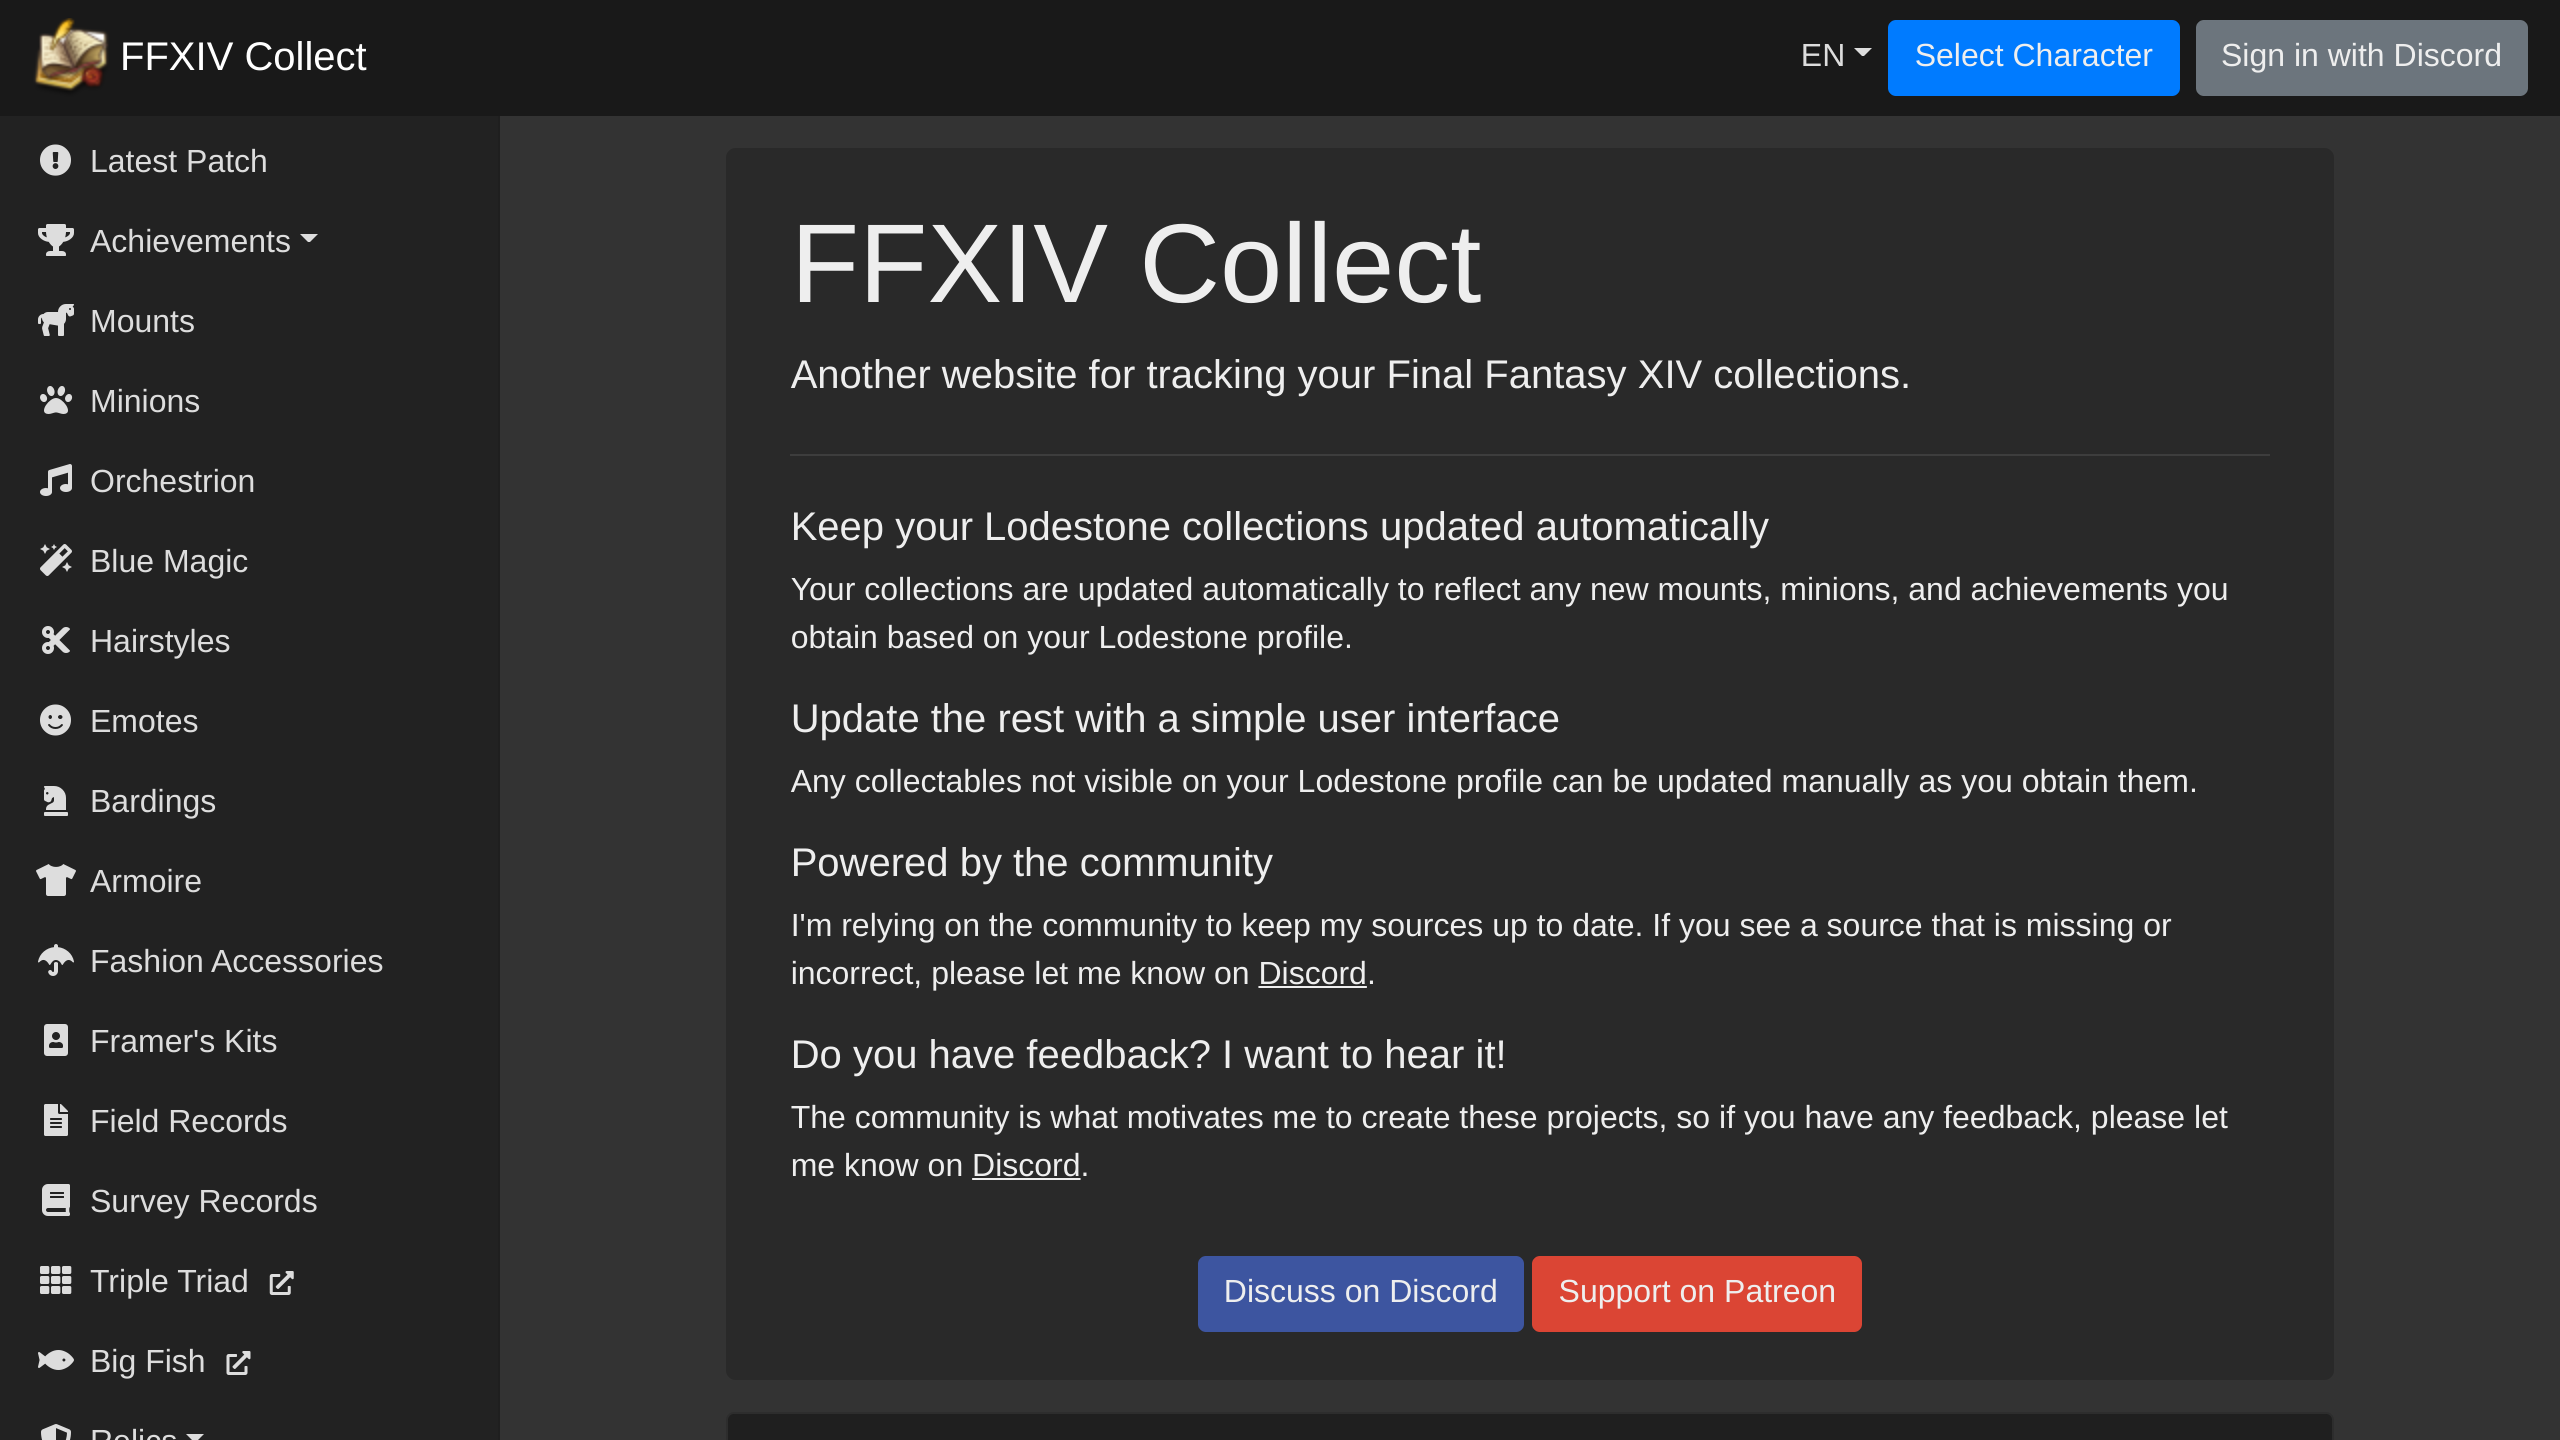 FFXIV Collect's website screenshot